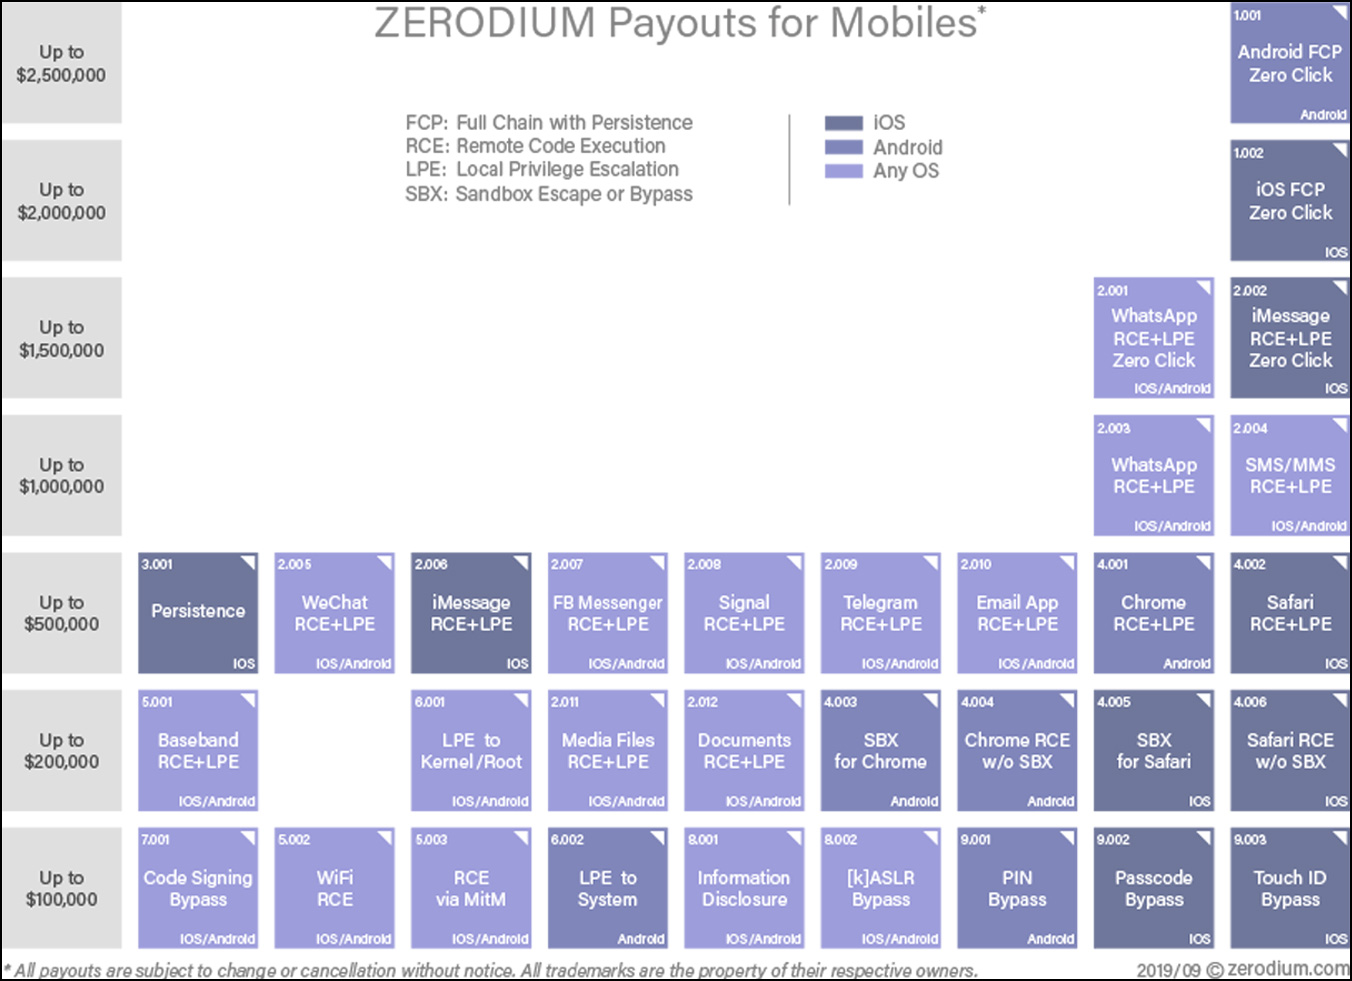 Zerodium payout chart